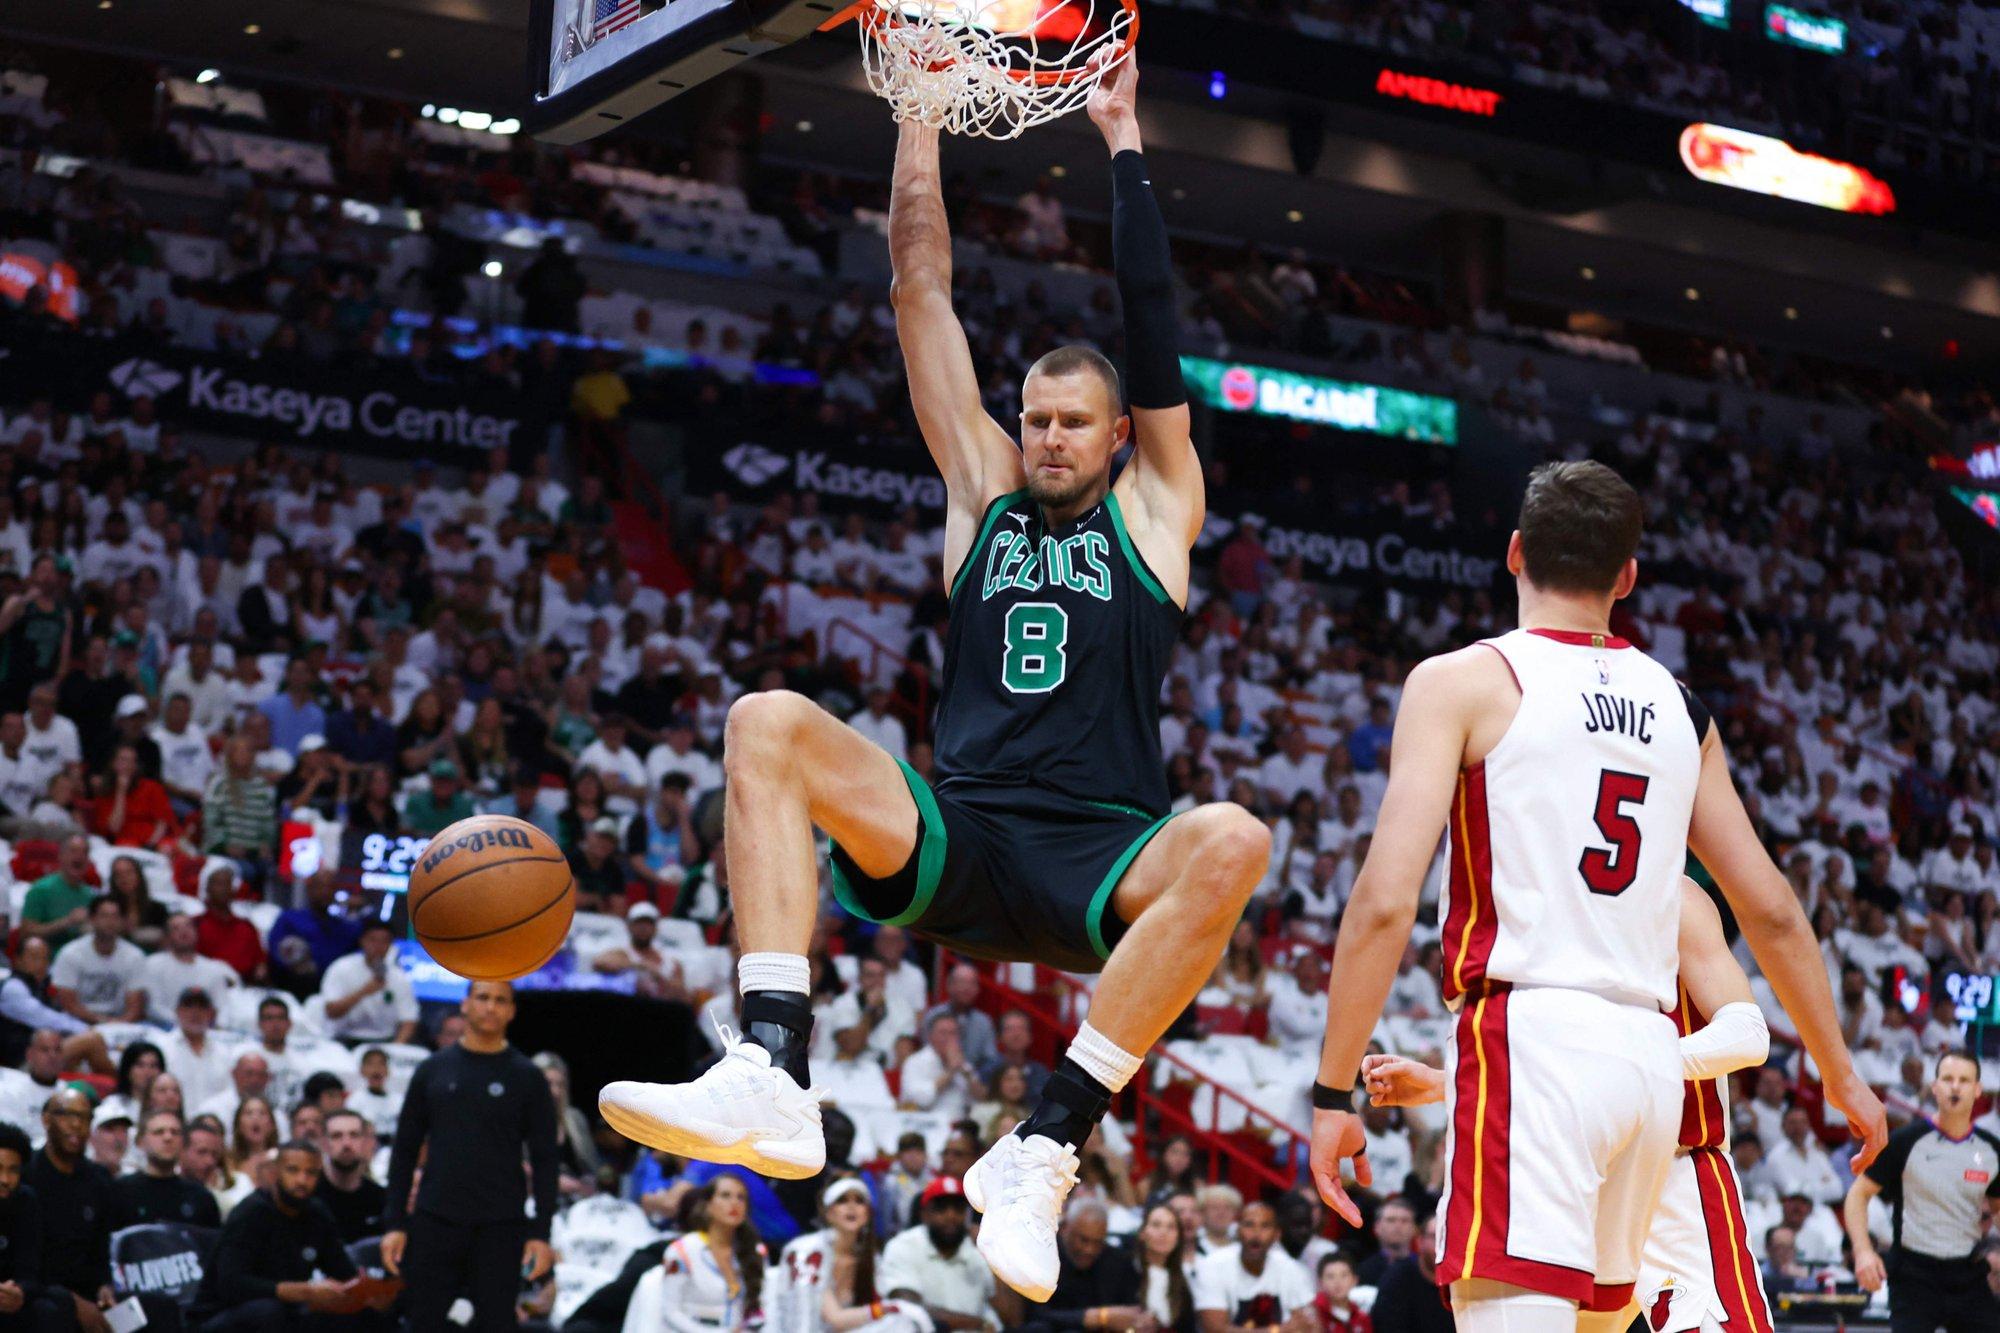 Porzingis dėl traumos praleis artėjančią „Celtics“ atkrintamųjų seriją